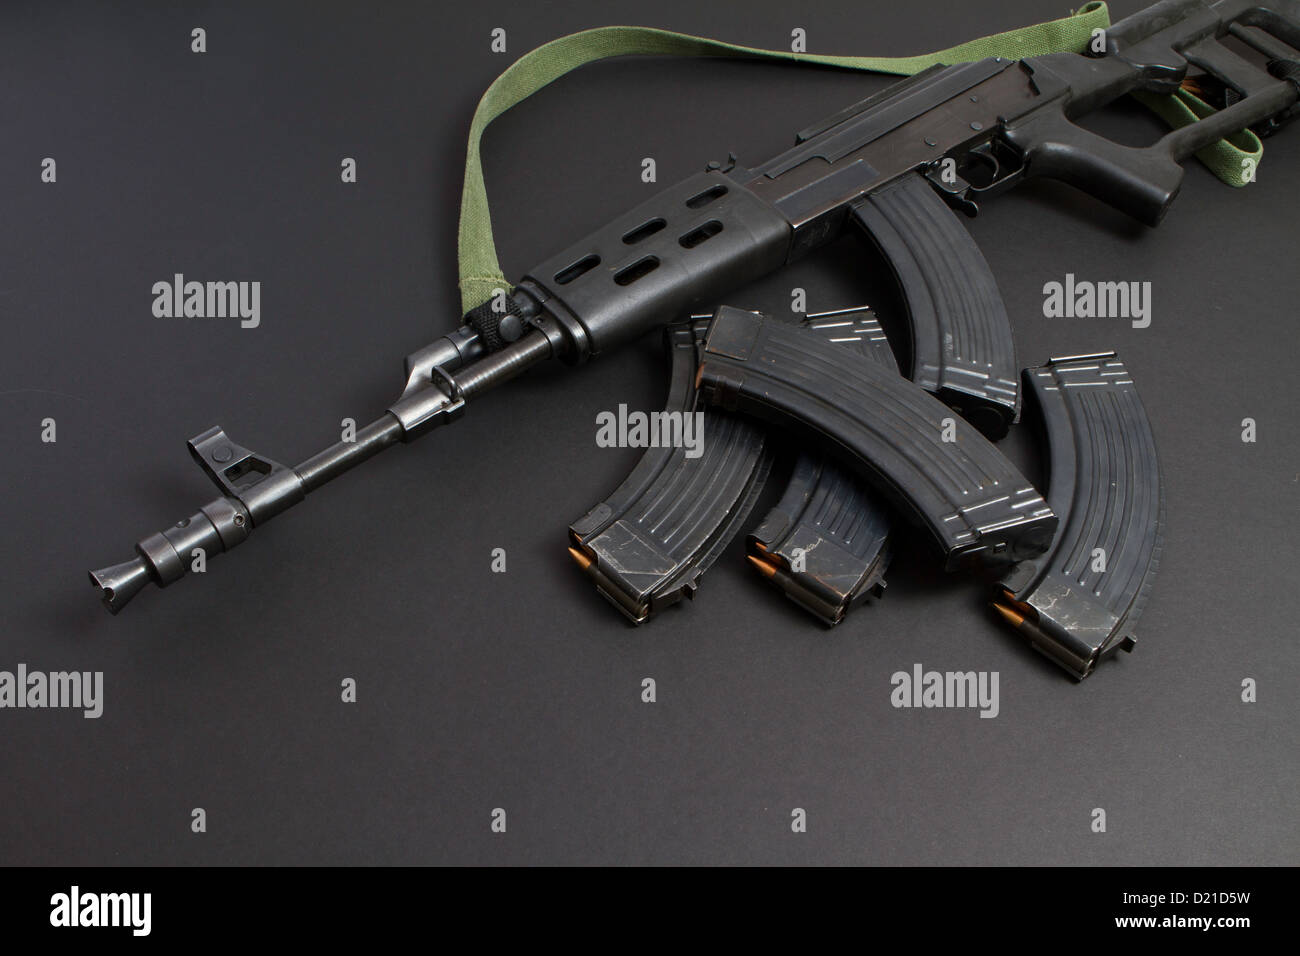 AK-47-sélective, feu gaz 7,62×39mm fusil d'assaut, d'abord développé dans l'URSS de Mikhaïl Kalachnikov Banque D'Images